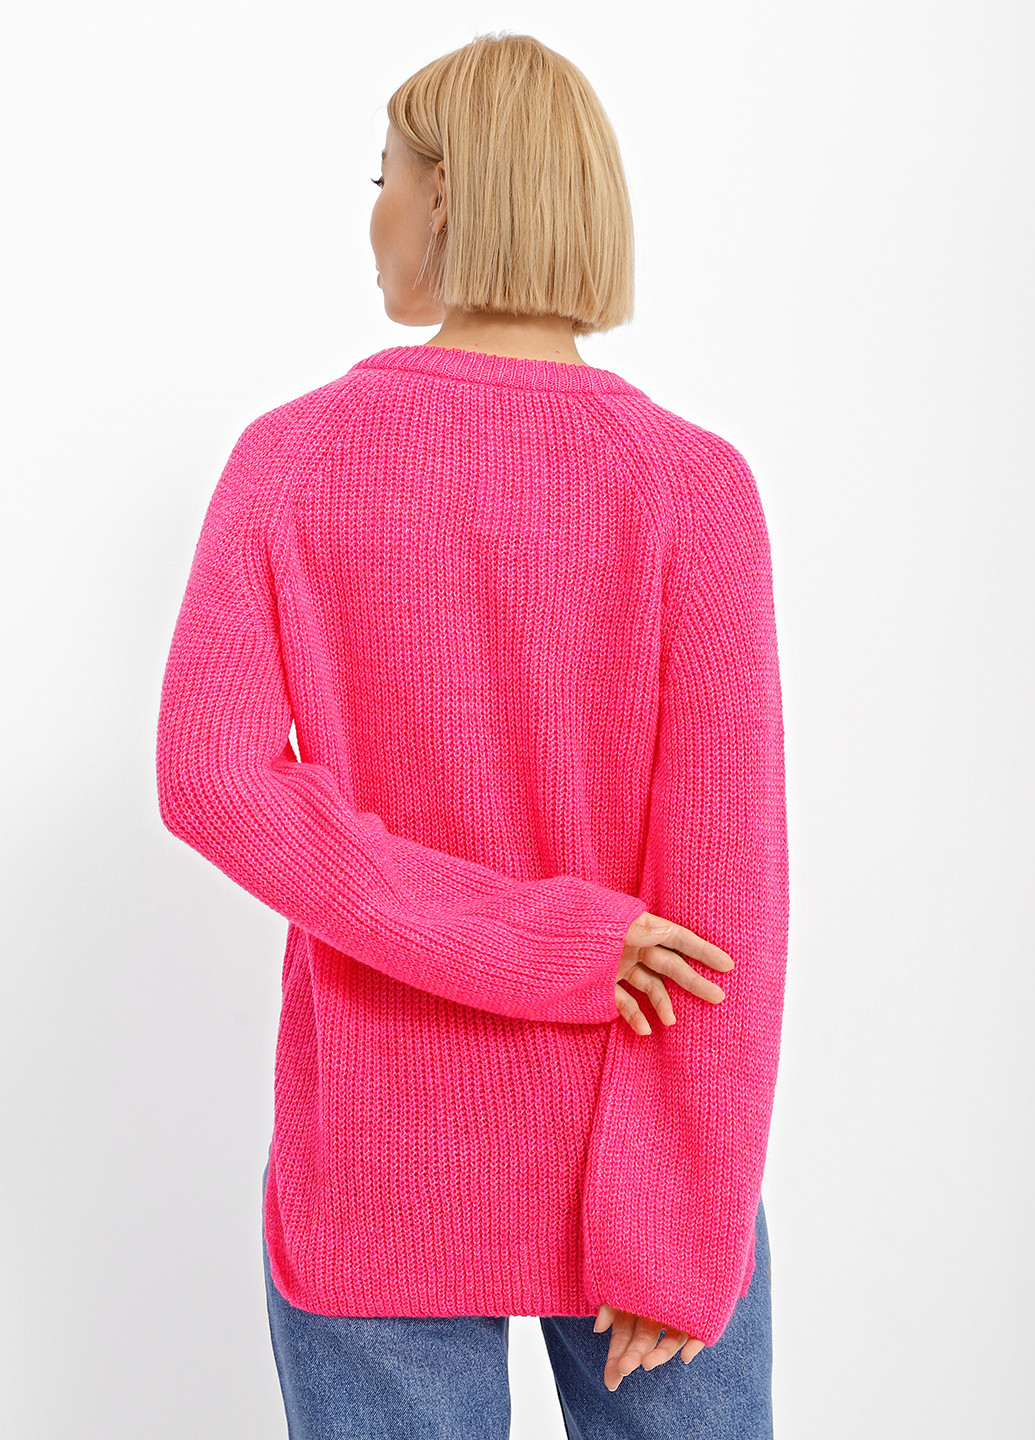 Малиновый демисезонный пуловер пуловер Sewel